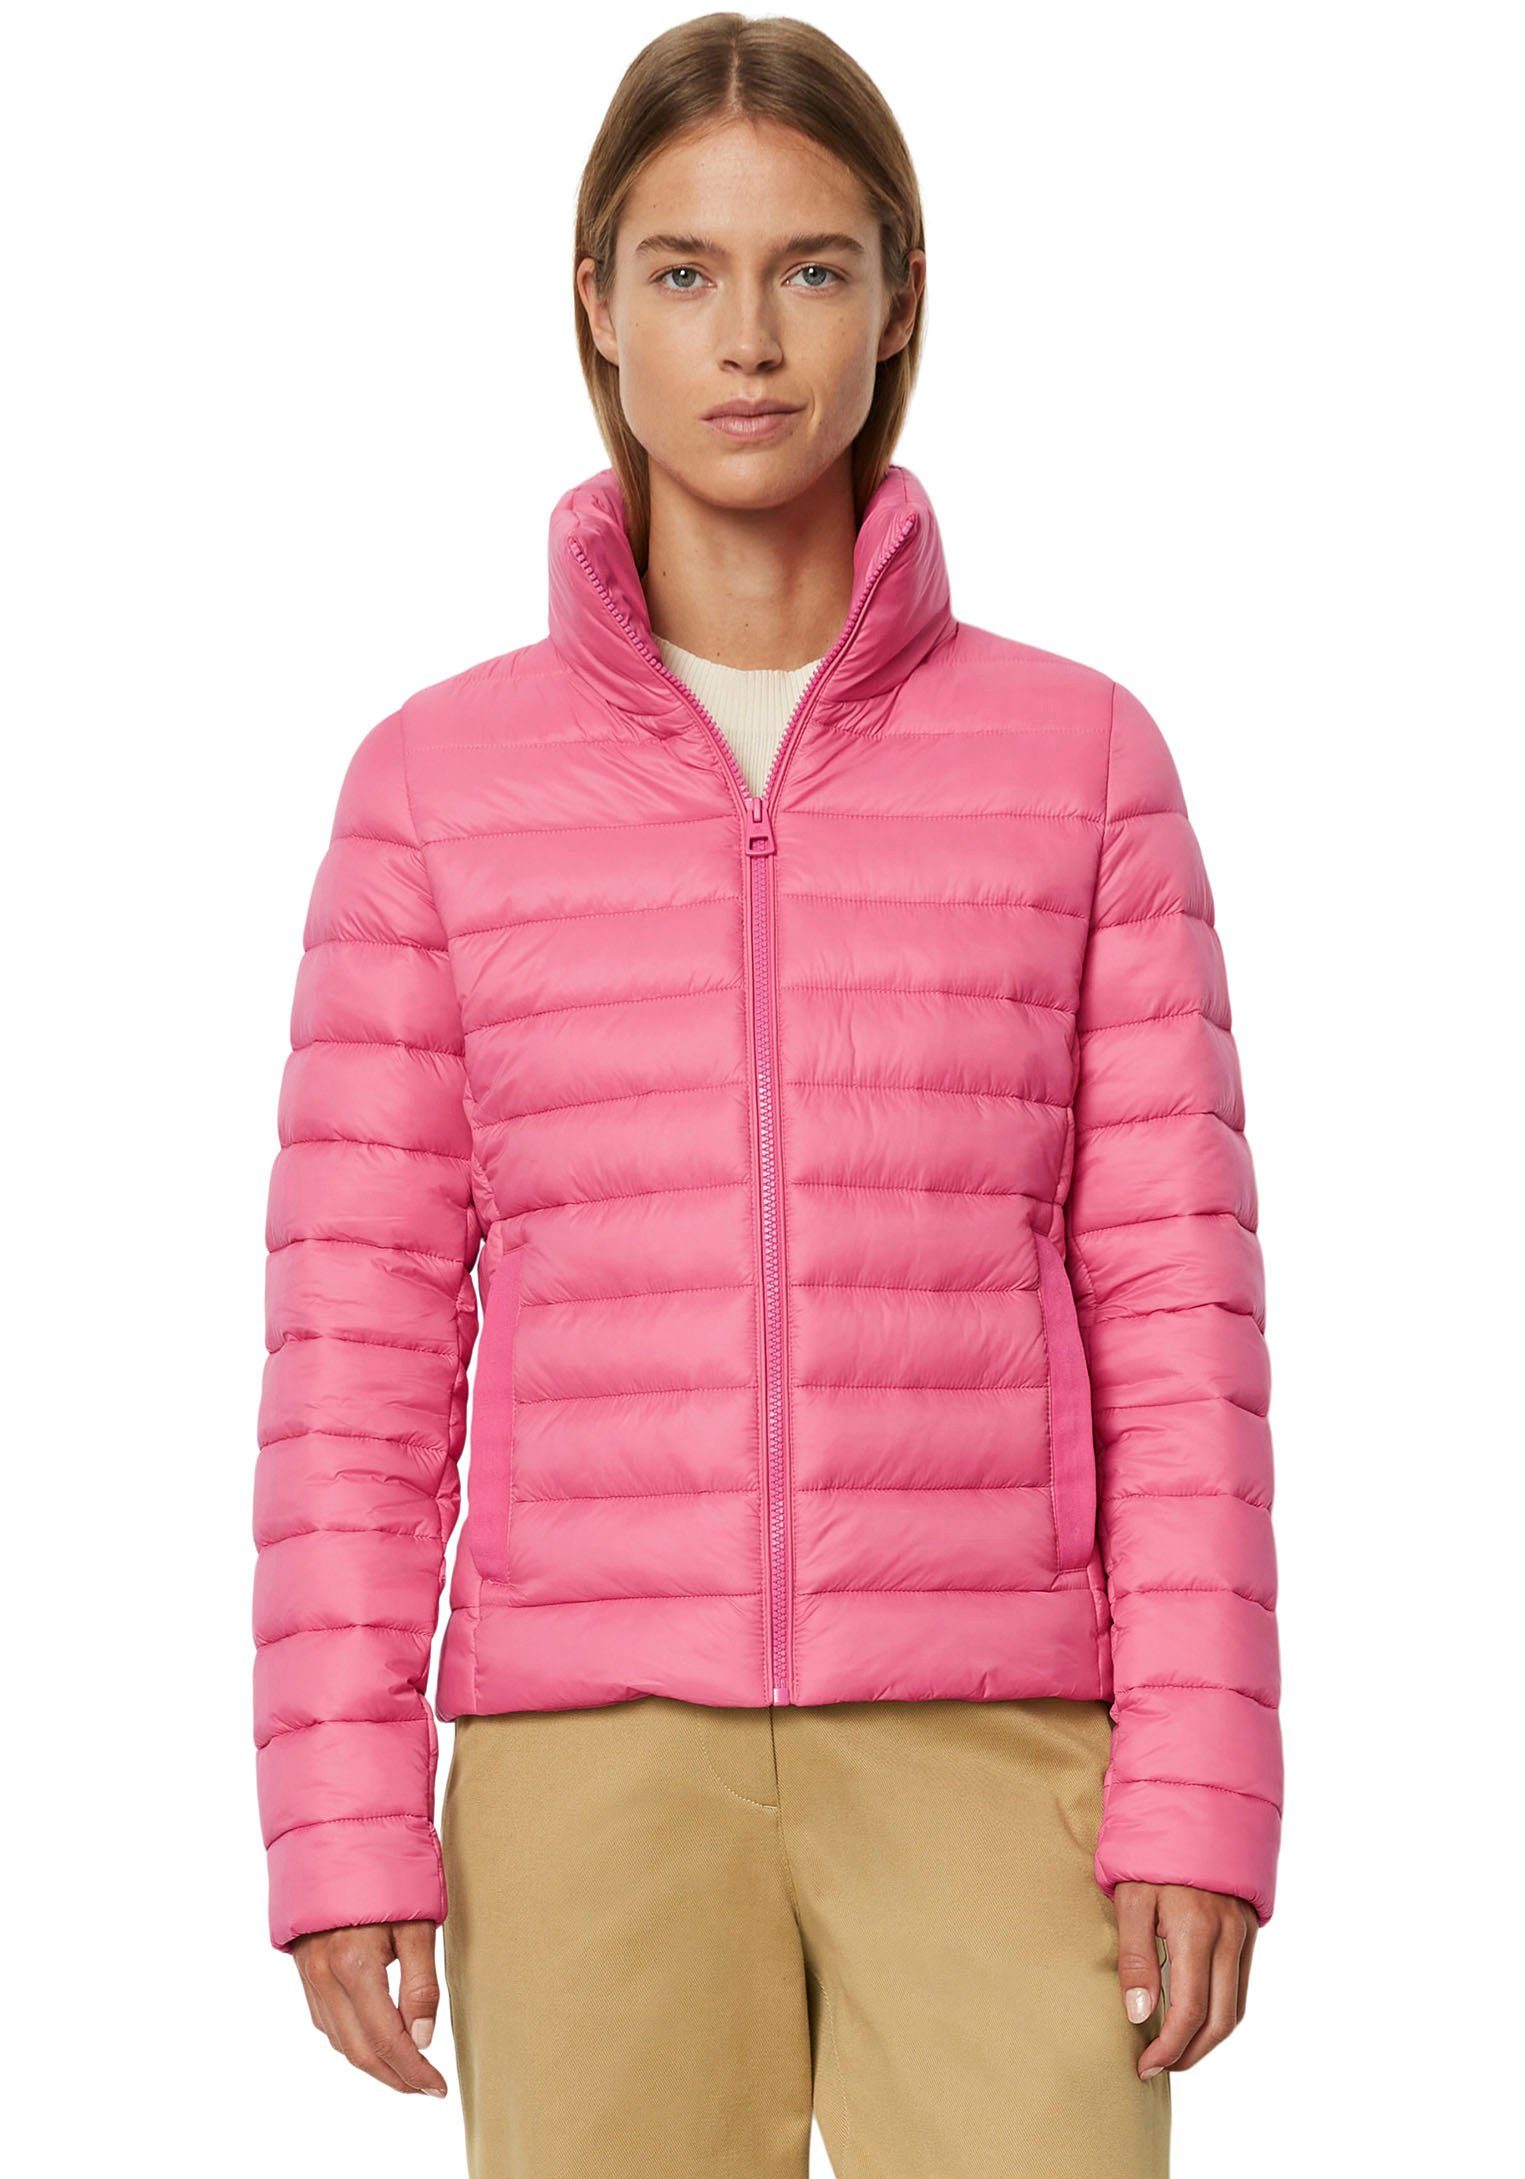 Übergangsjacken kaufen » Pinke Rosa Damen Übergangsjacken für